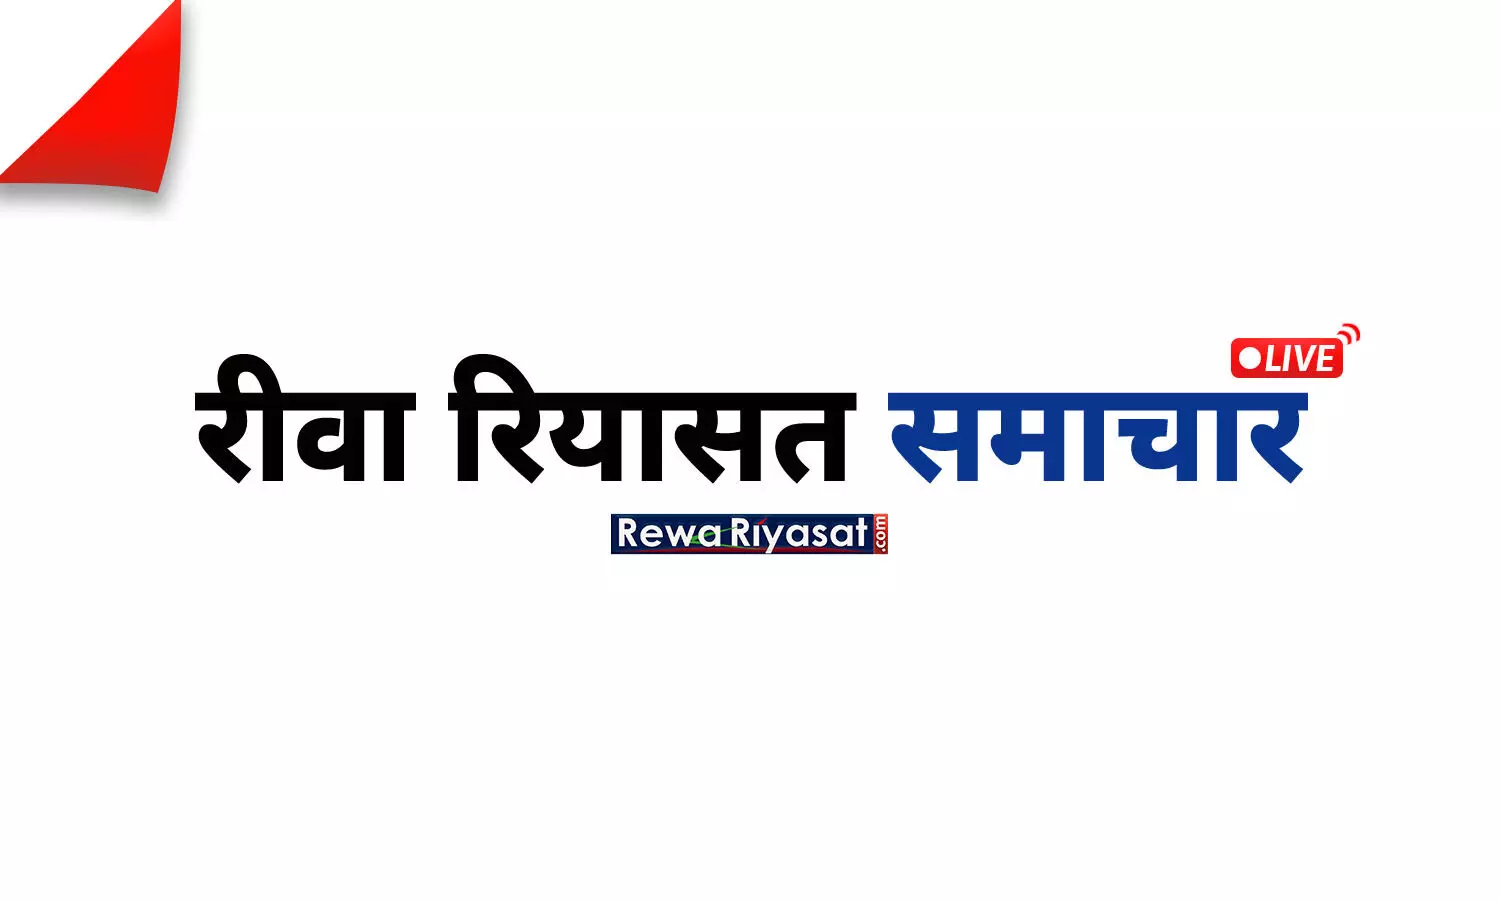 Breaking News in Hindi: लाइव ब्रेकिंग न्यूज़, पढ़ें मंगलवार 21 मार्च के मुख्य और ताजा समाचार